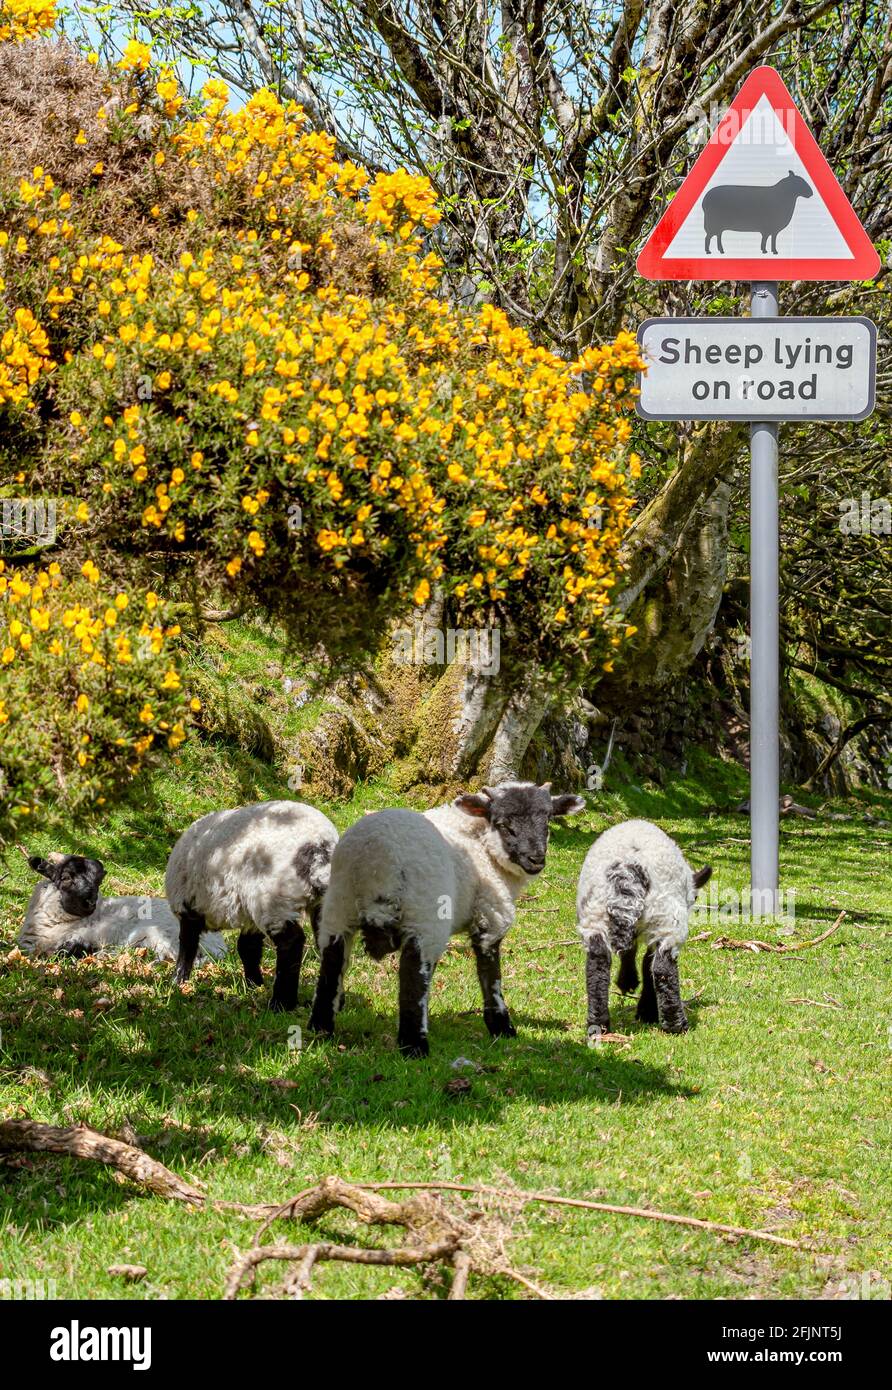 Blackface Sheep debout sous un panneau de rue avertissant des moutons dans la rue, parc national de Dartmoor, Devon, Angleterre, Royaume-Uni Banque D'Images